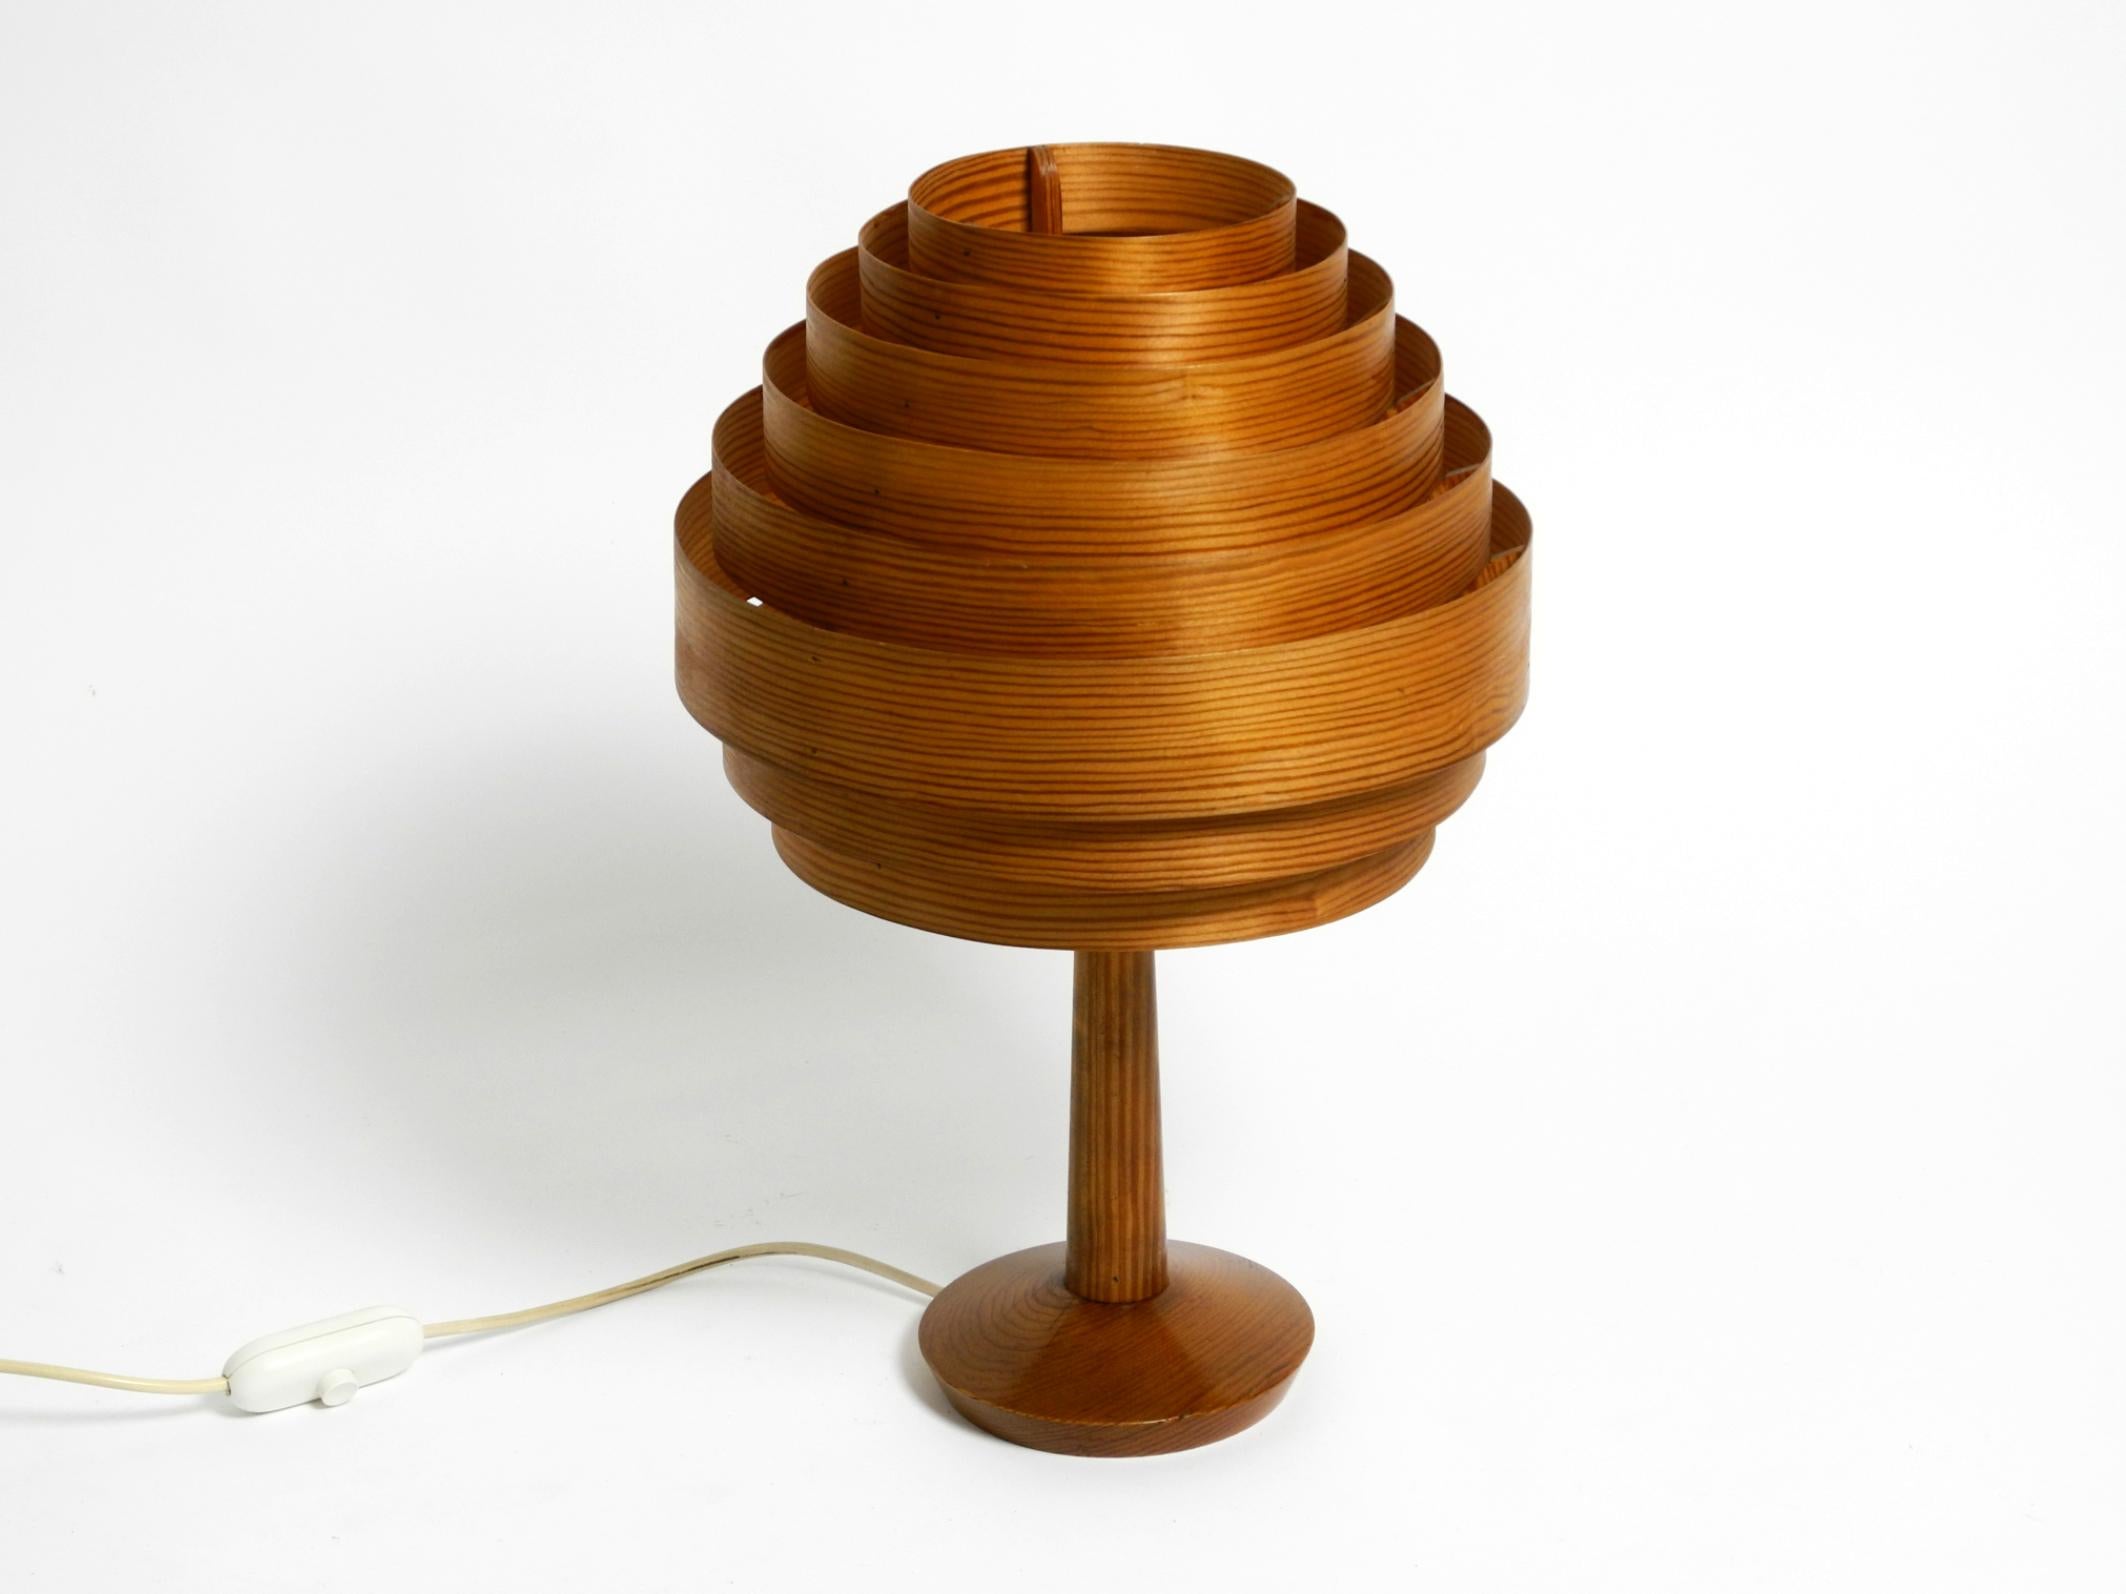 Magnifique lampe de table à lamelles en placage de pin des années 1960.
Design/One Jakobsson pour Markaryd. Fabriqué en Suède.
Un beau classique suédois des années 1960.
Très bon état vintage et entièrement fonctionnel.
La lampe entière n'est pas